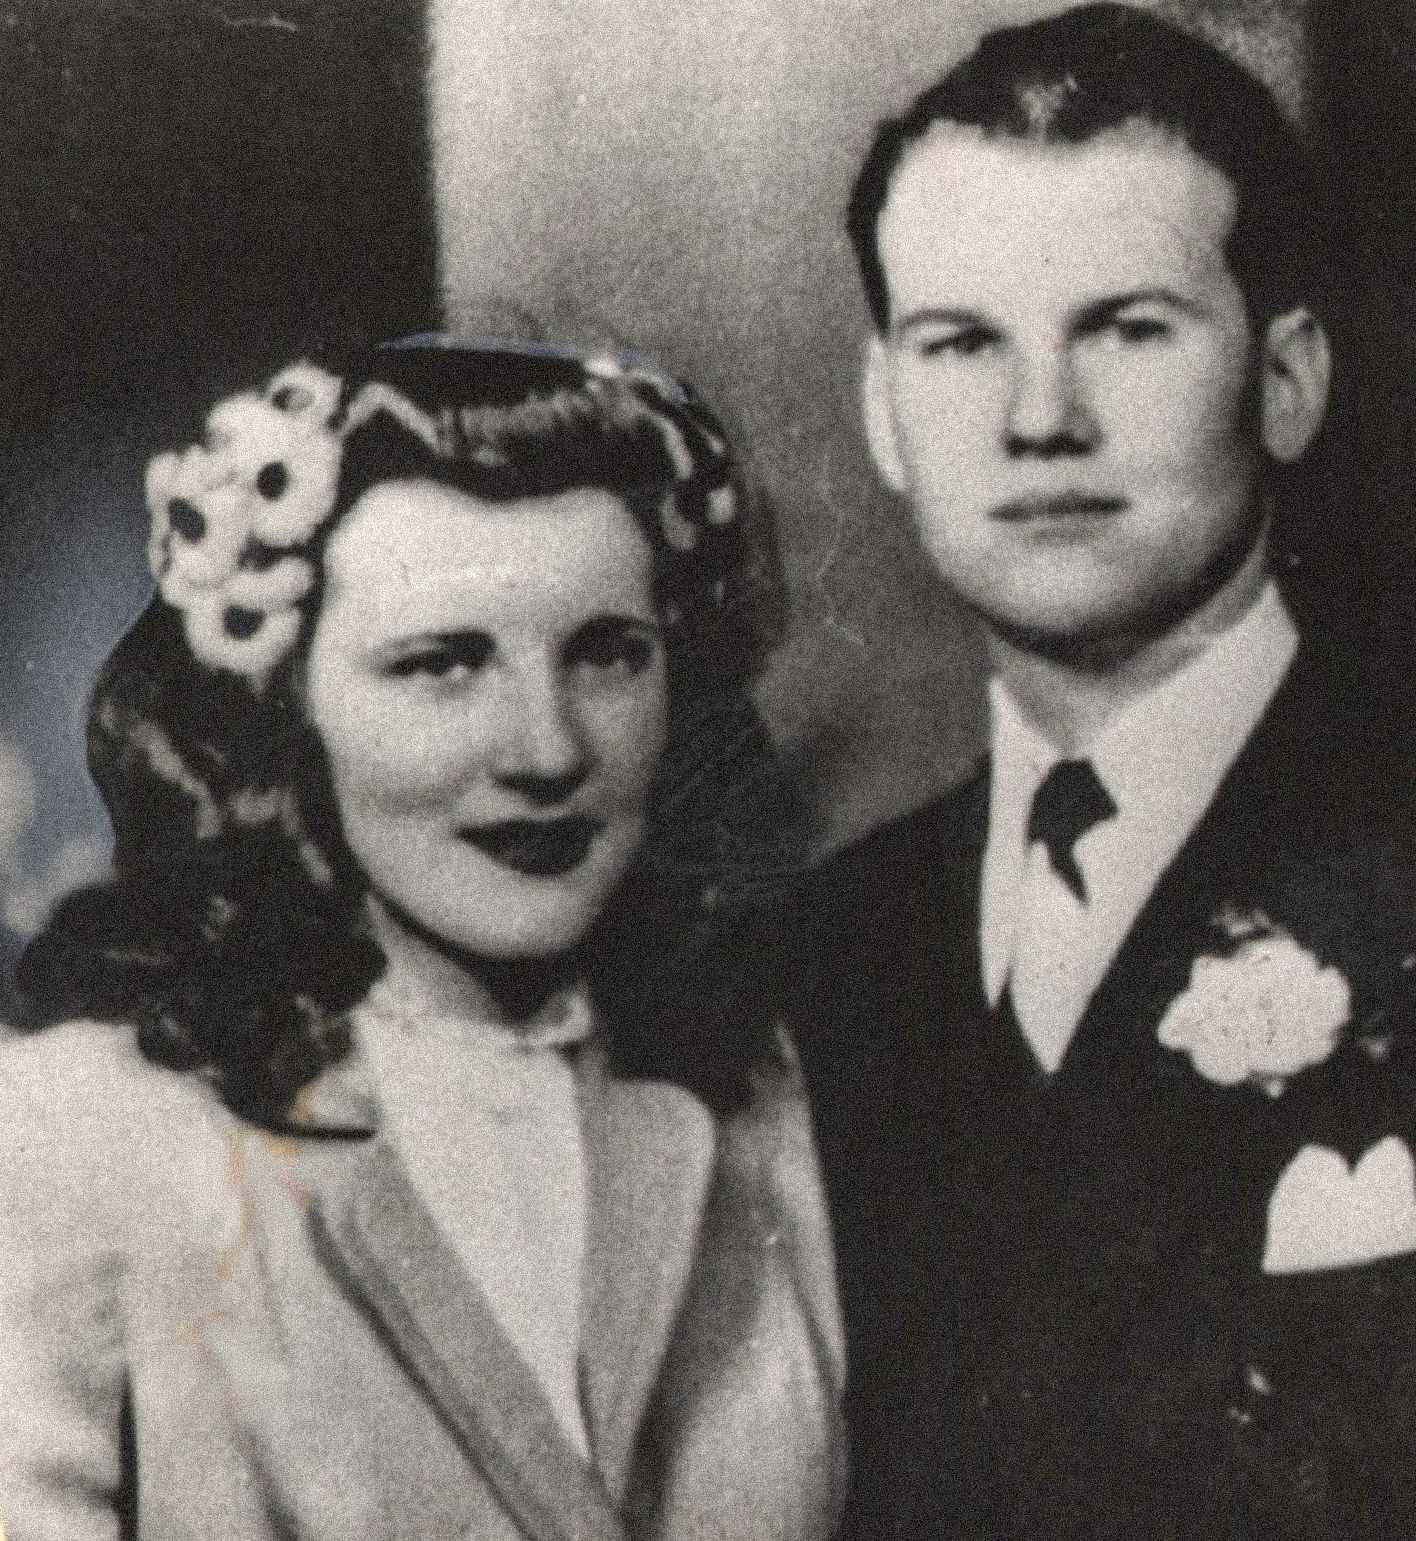 图为山姆和玛丽莲·谢泼德，一对看似幸福的年轻夫妇。 两人于 21 年 1945 月 XNUMX 日结婚，并育有一个孩子 Sam Reese Sheppard。 玛丽莲遇害时正怀着第二个孩子。